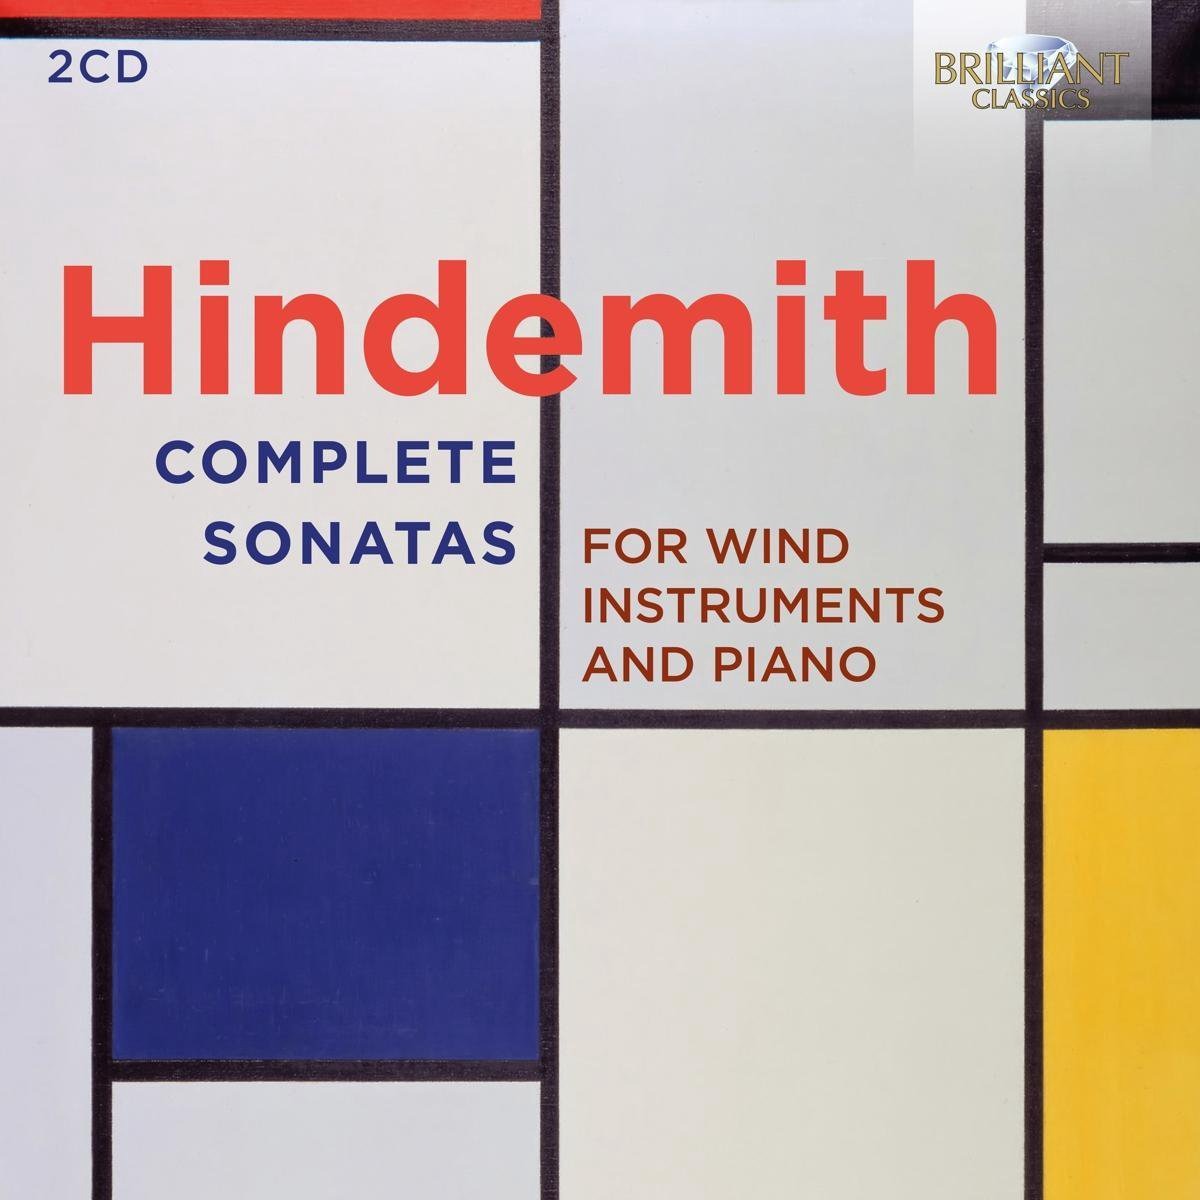 Novedades discográficas: «Hindemith: Complete Sonatas for Wind Instruments and Piano» editado en Brilliant Classics